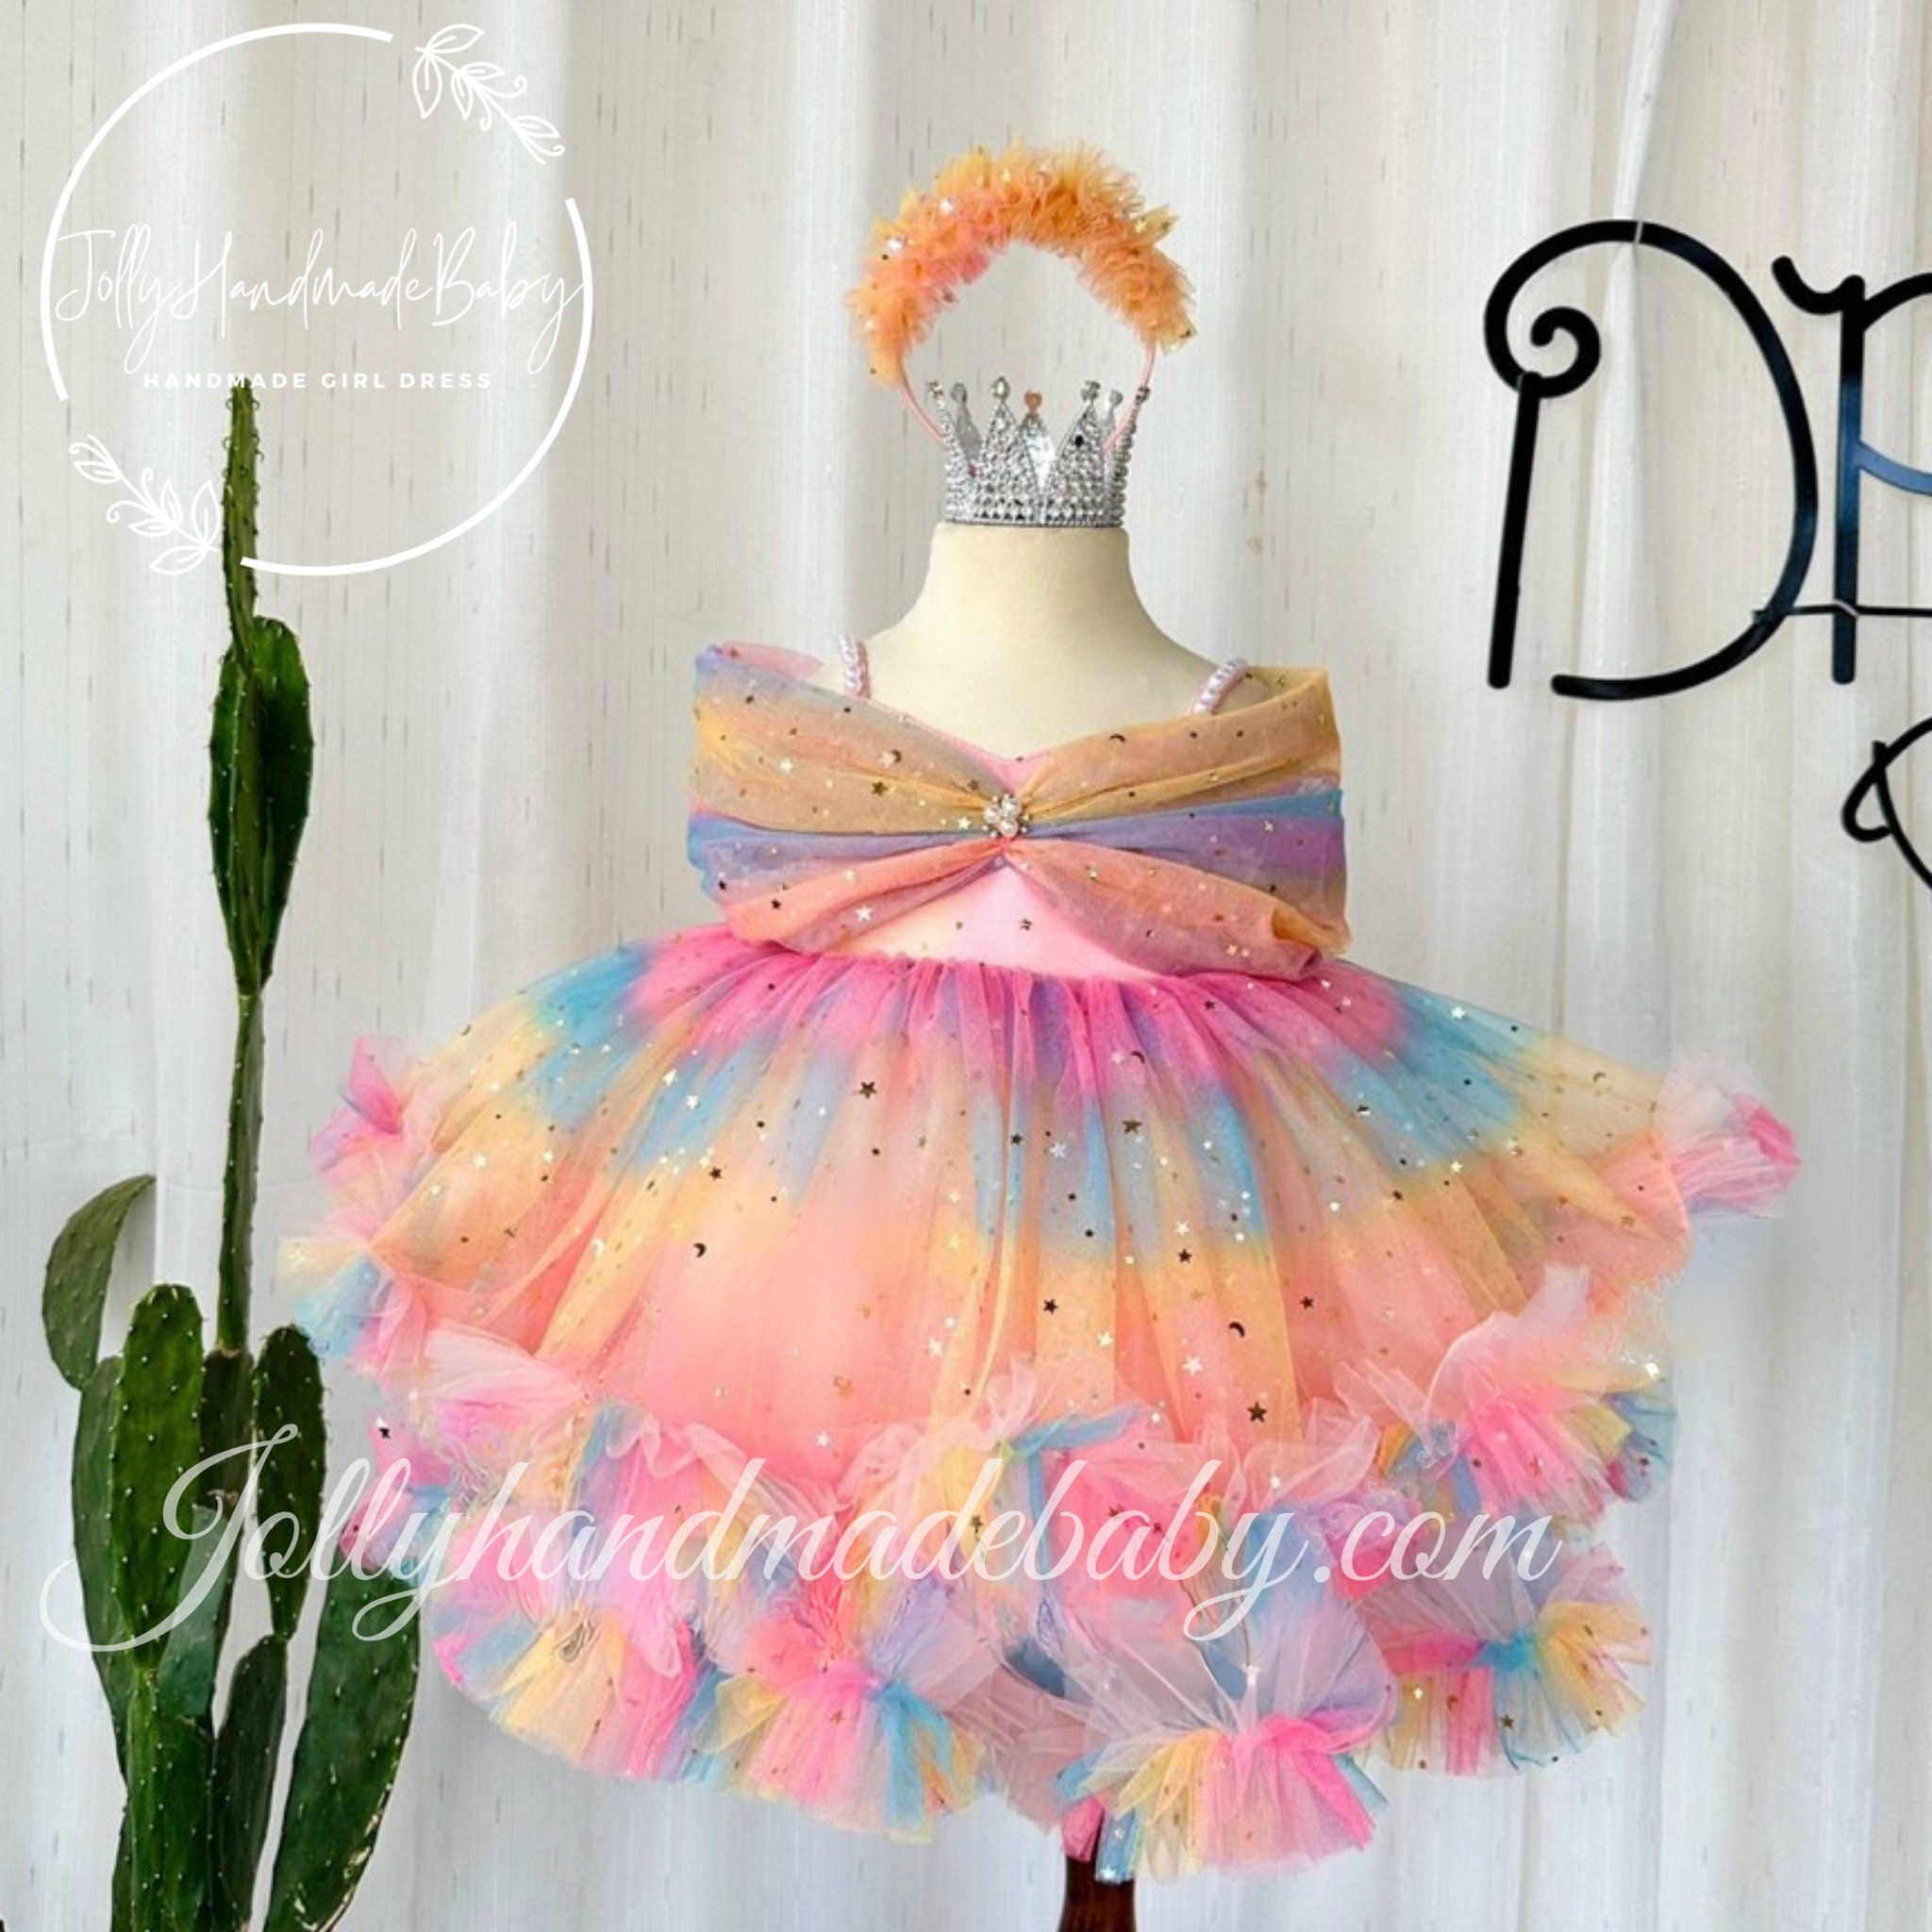 Græsse Jo da studieafgift Rainbow Girl Tulle Dress Baby Girl Birthday Dress Cute Girl - Etsy Denmark